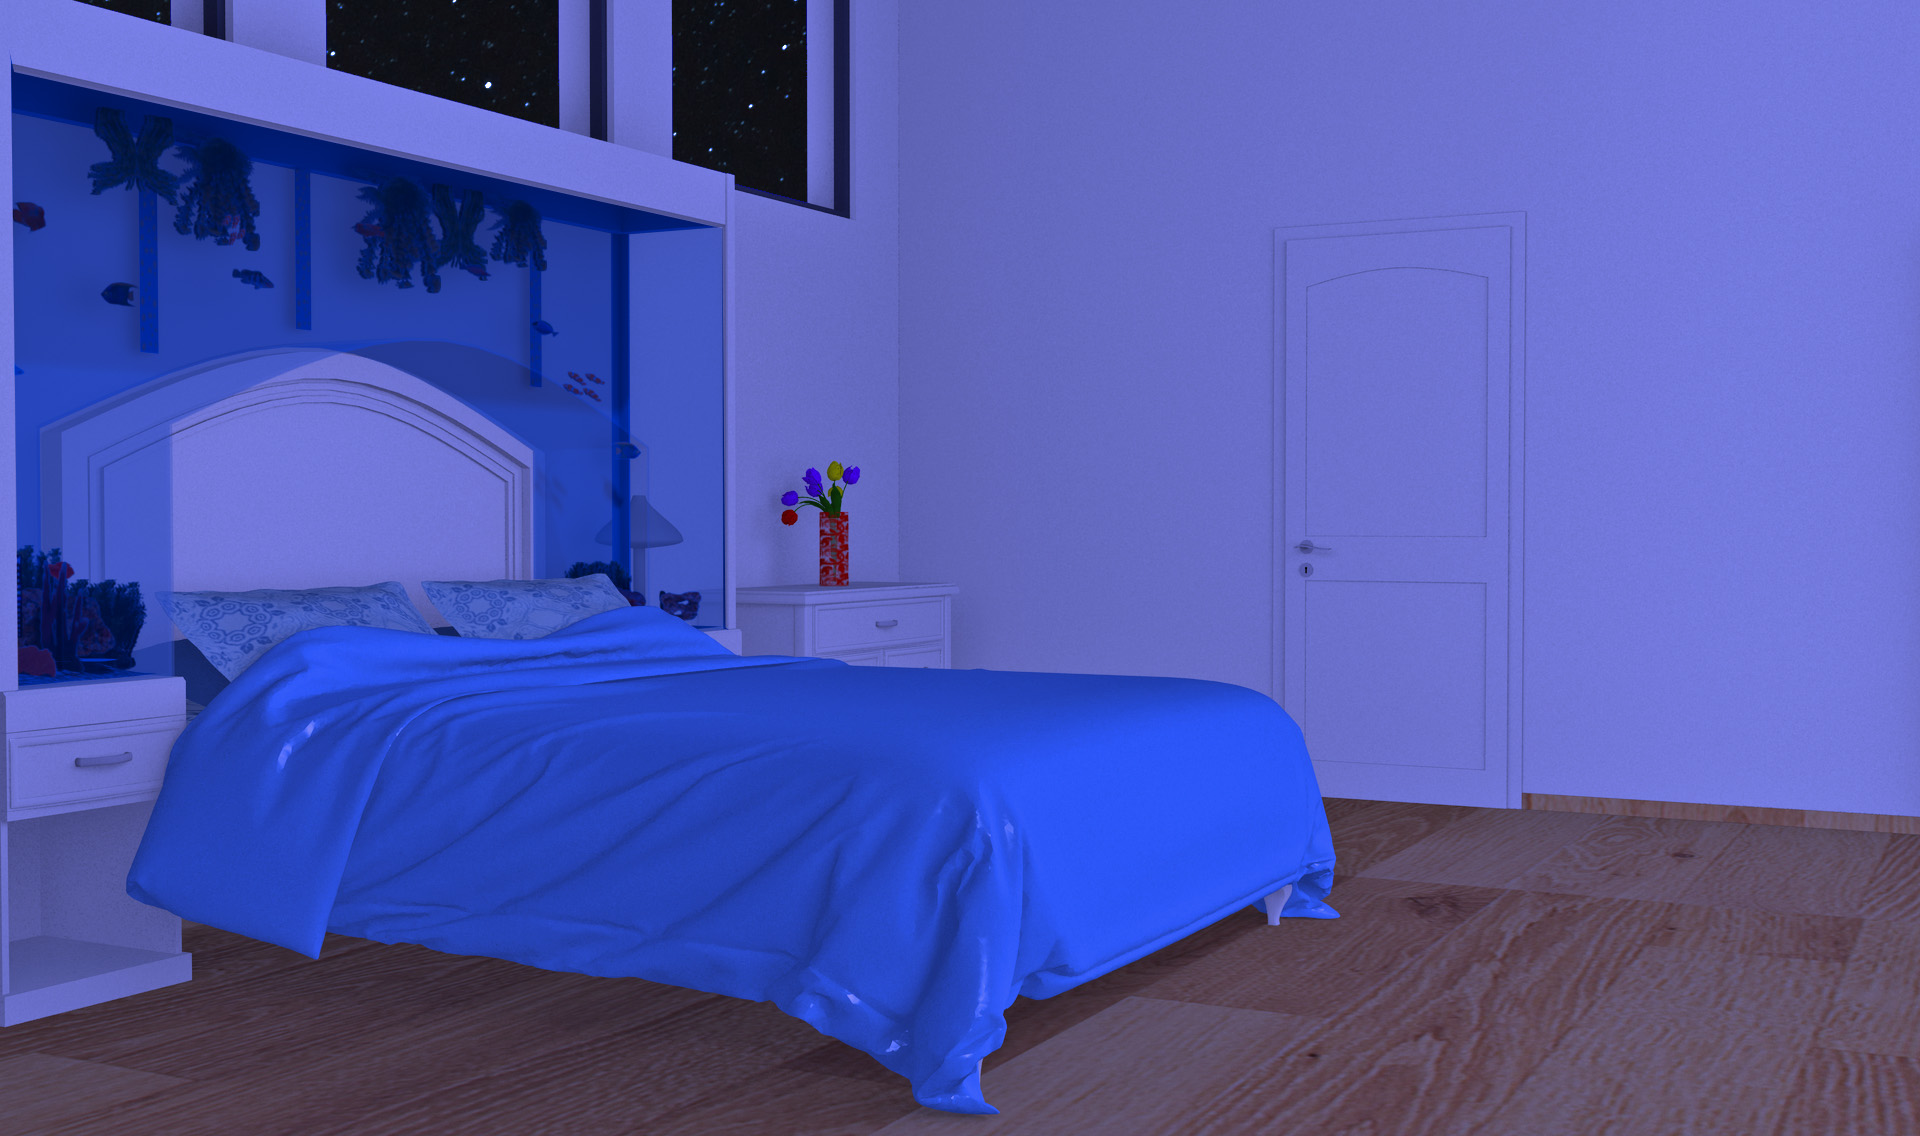 INT. AQUA BEDROOM 1 STARS – NIGHT